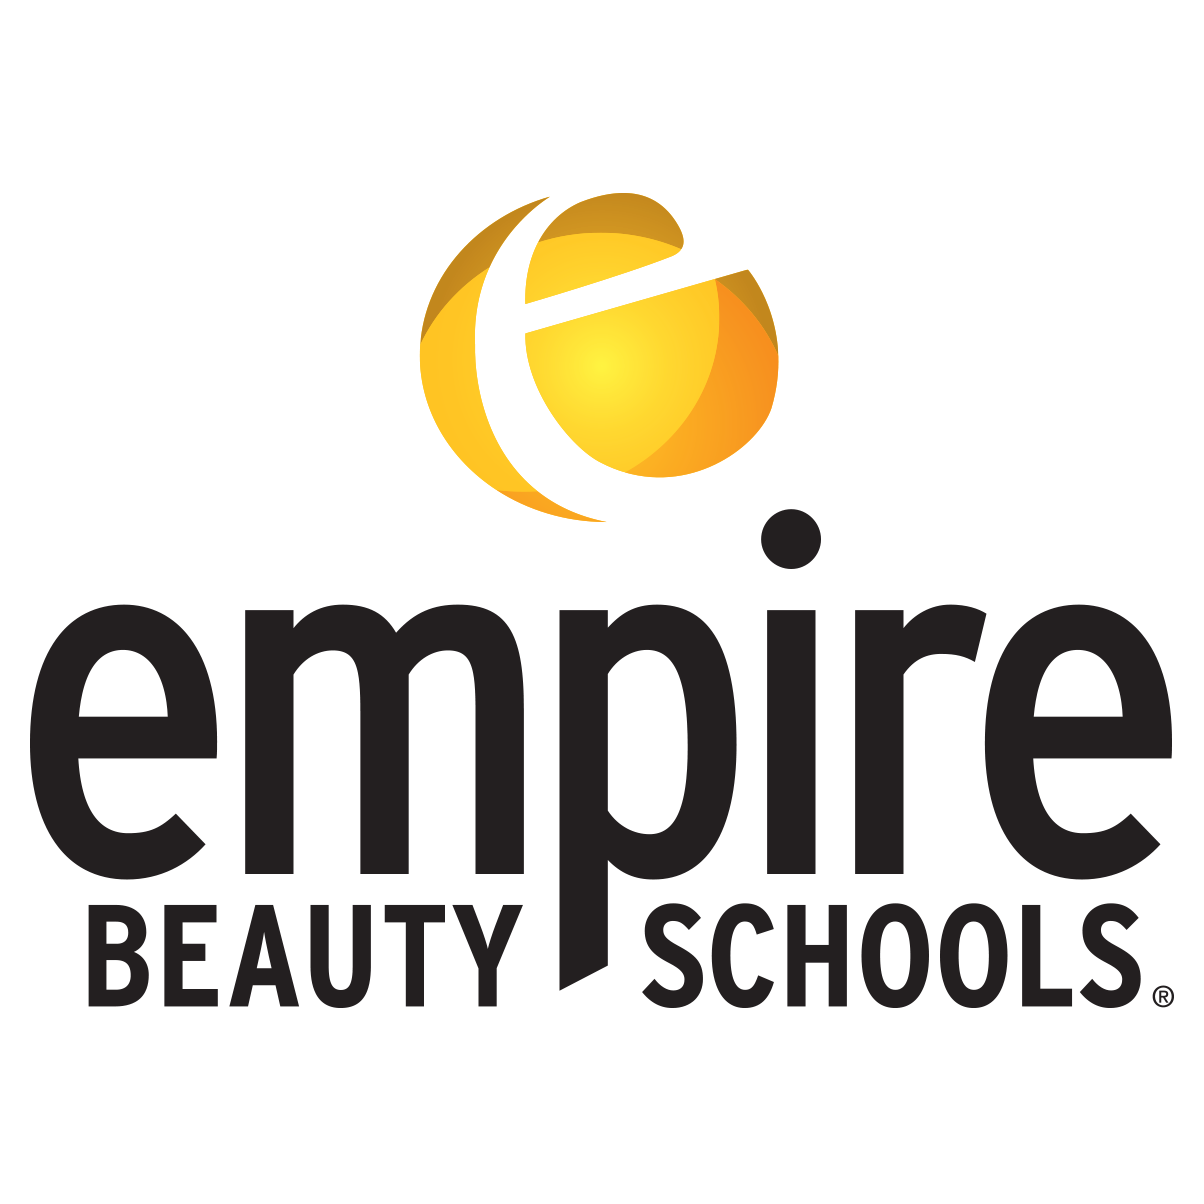 Empire Beauty School Photo